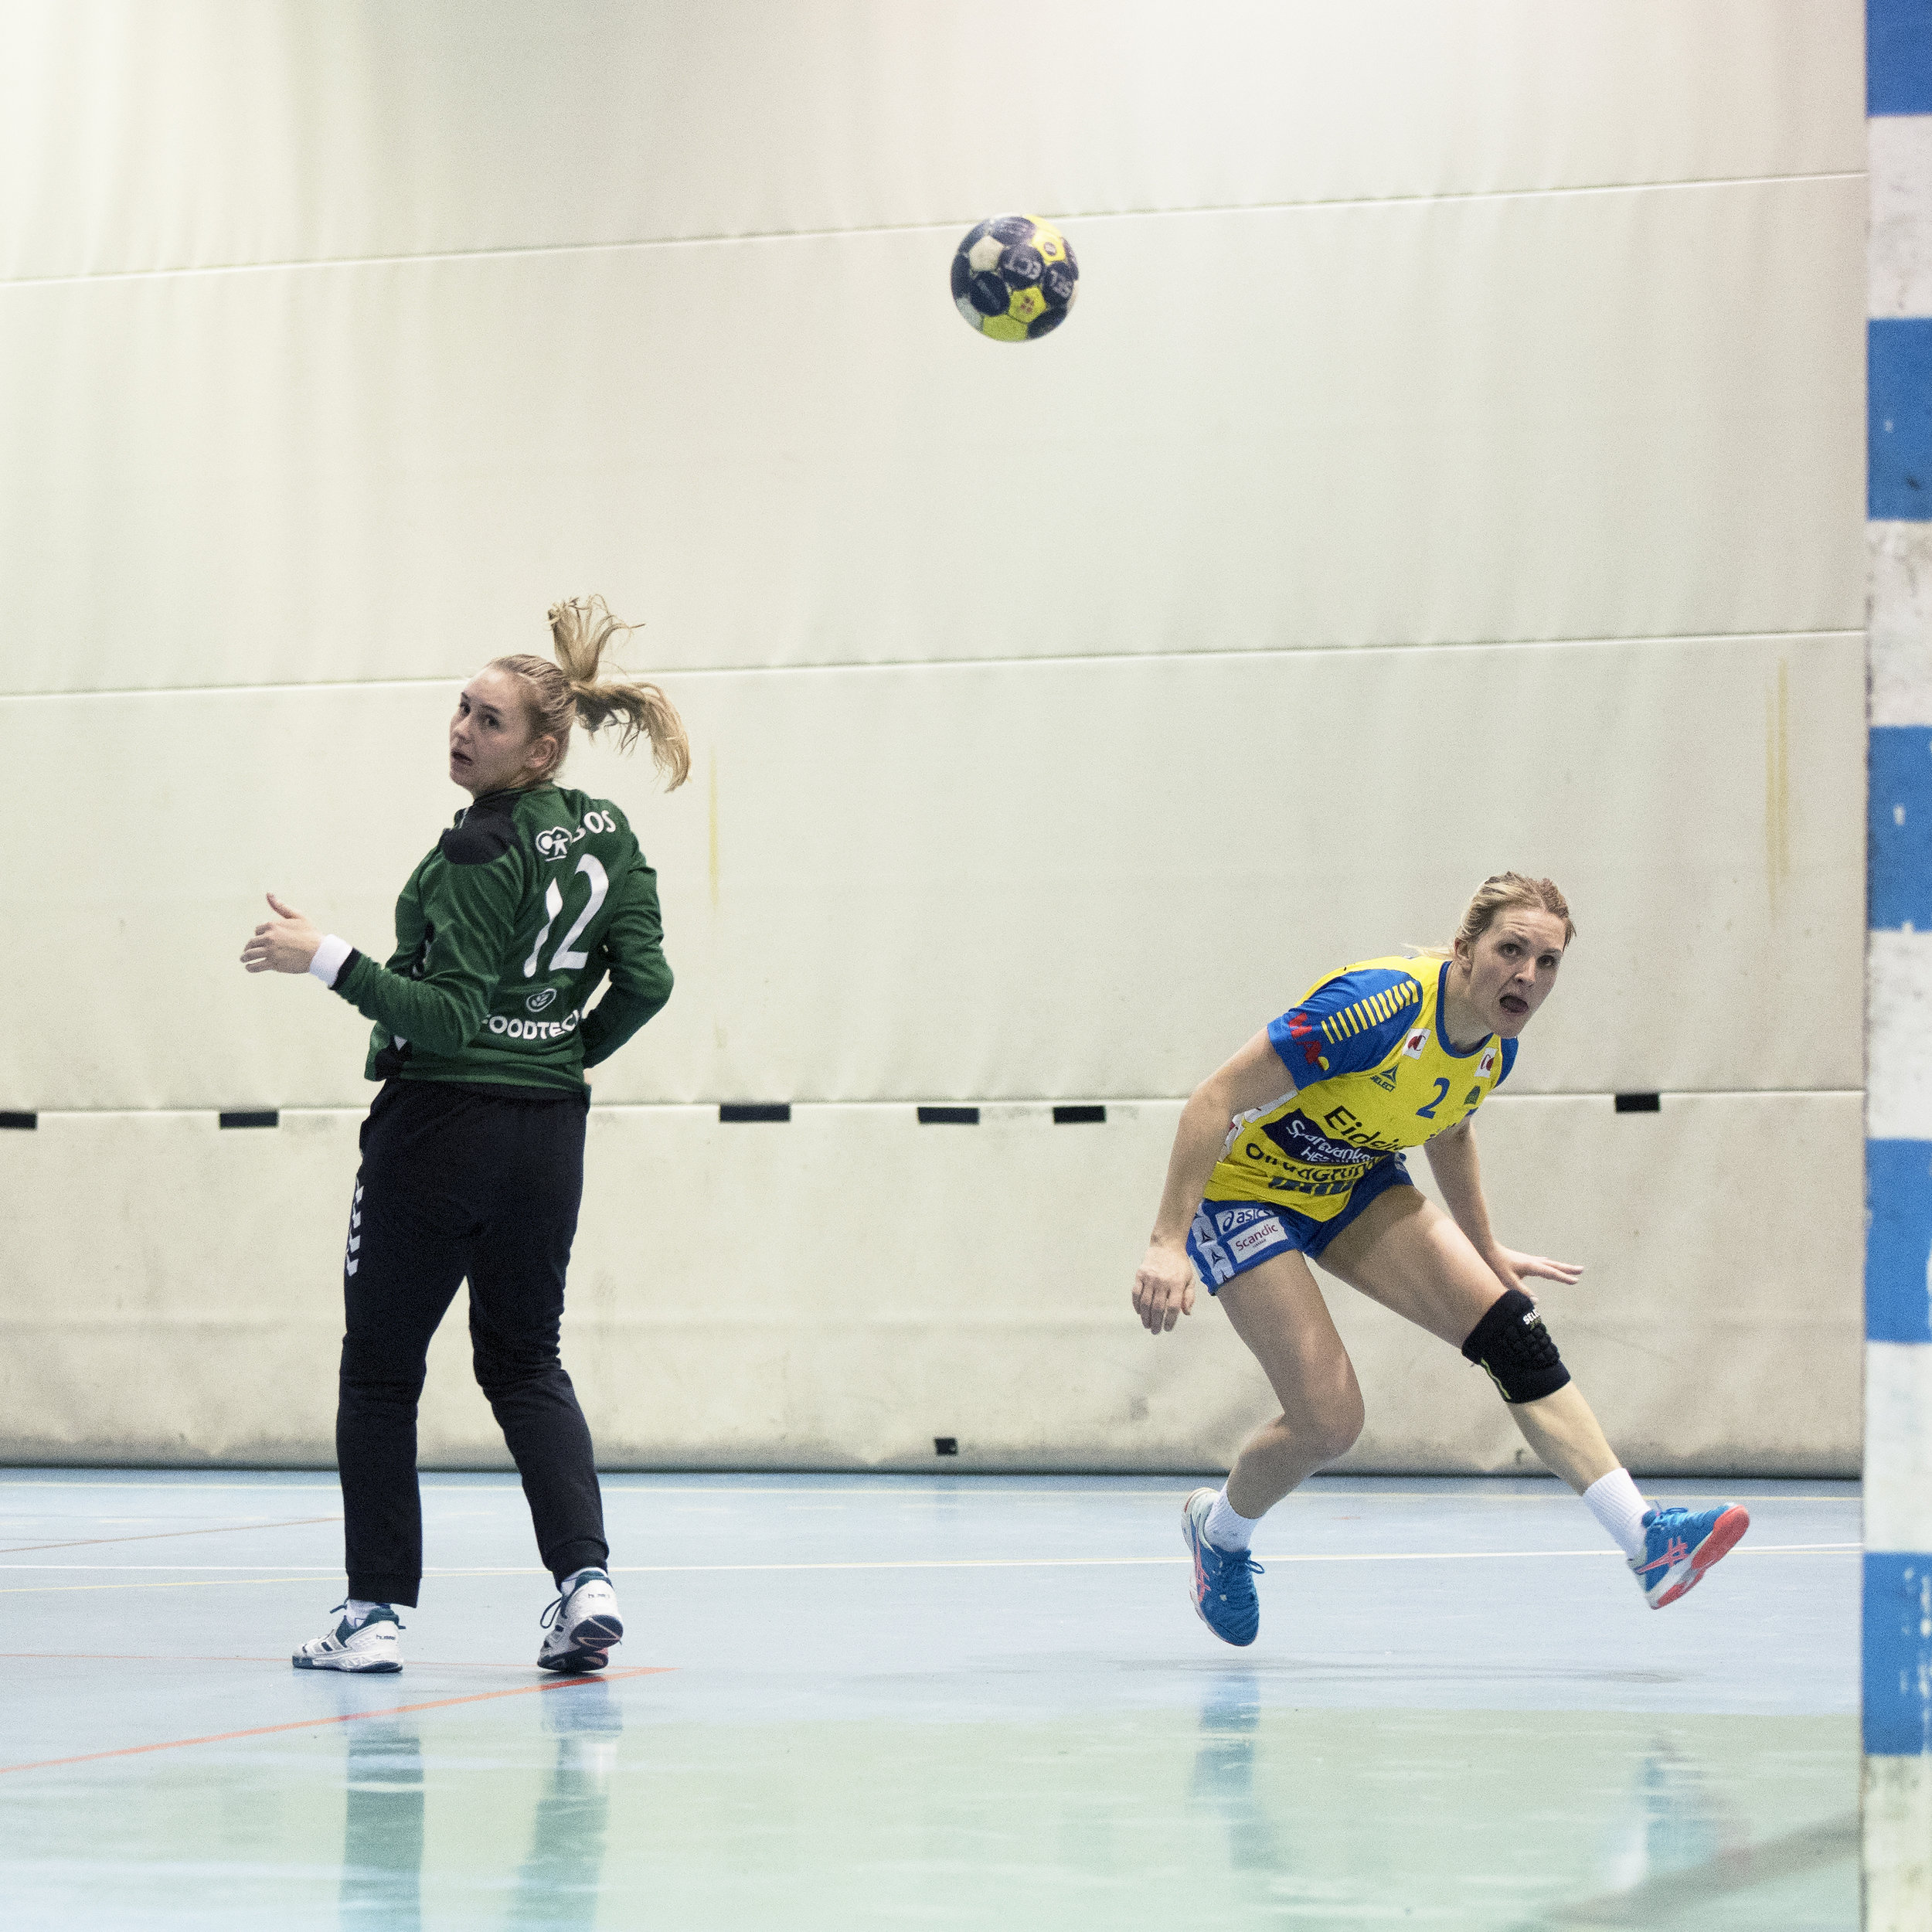  Keeper Marie S. Tømmerbakke, Oppsal, looking at the ball going into goal against Storhamar. 2017. 